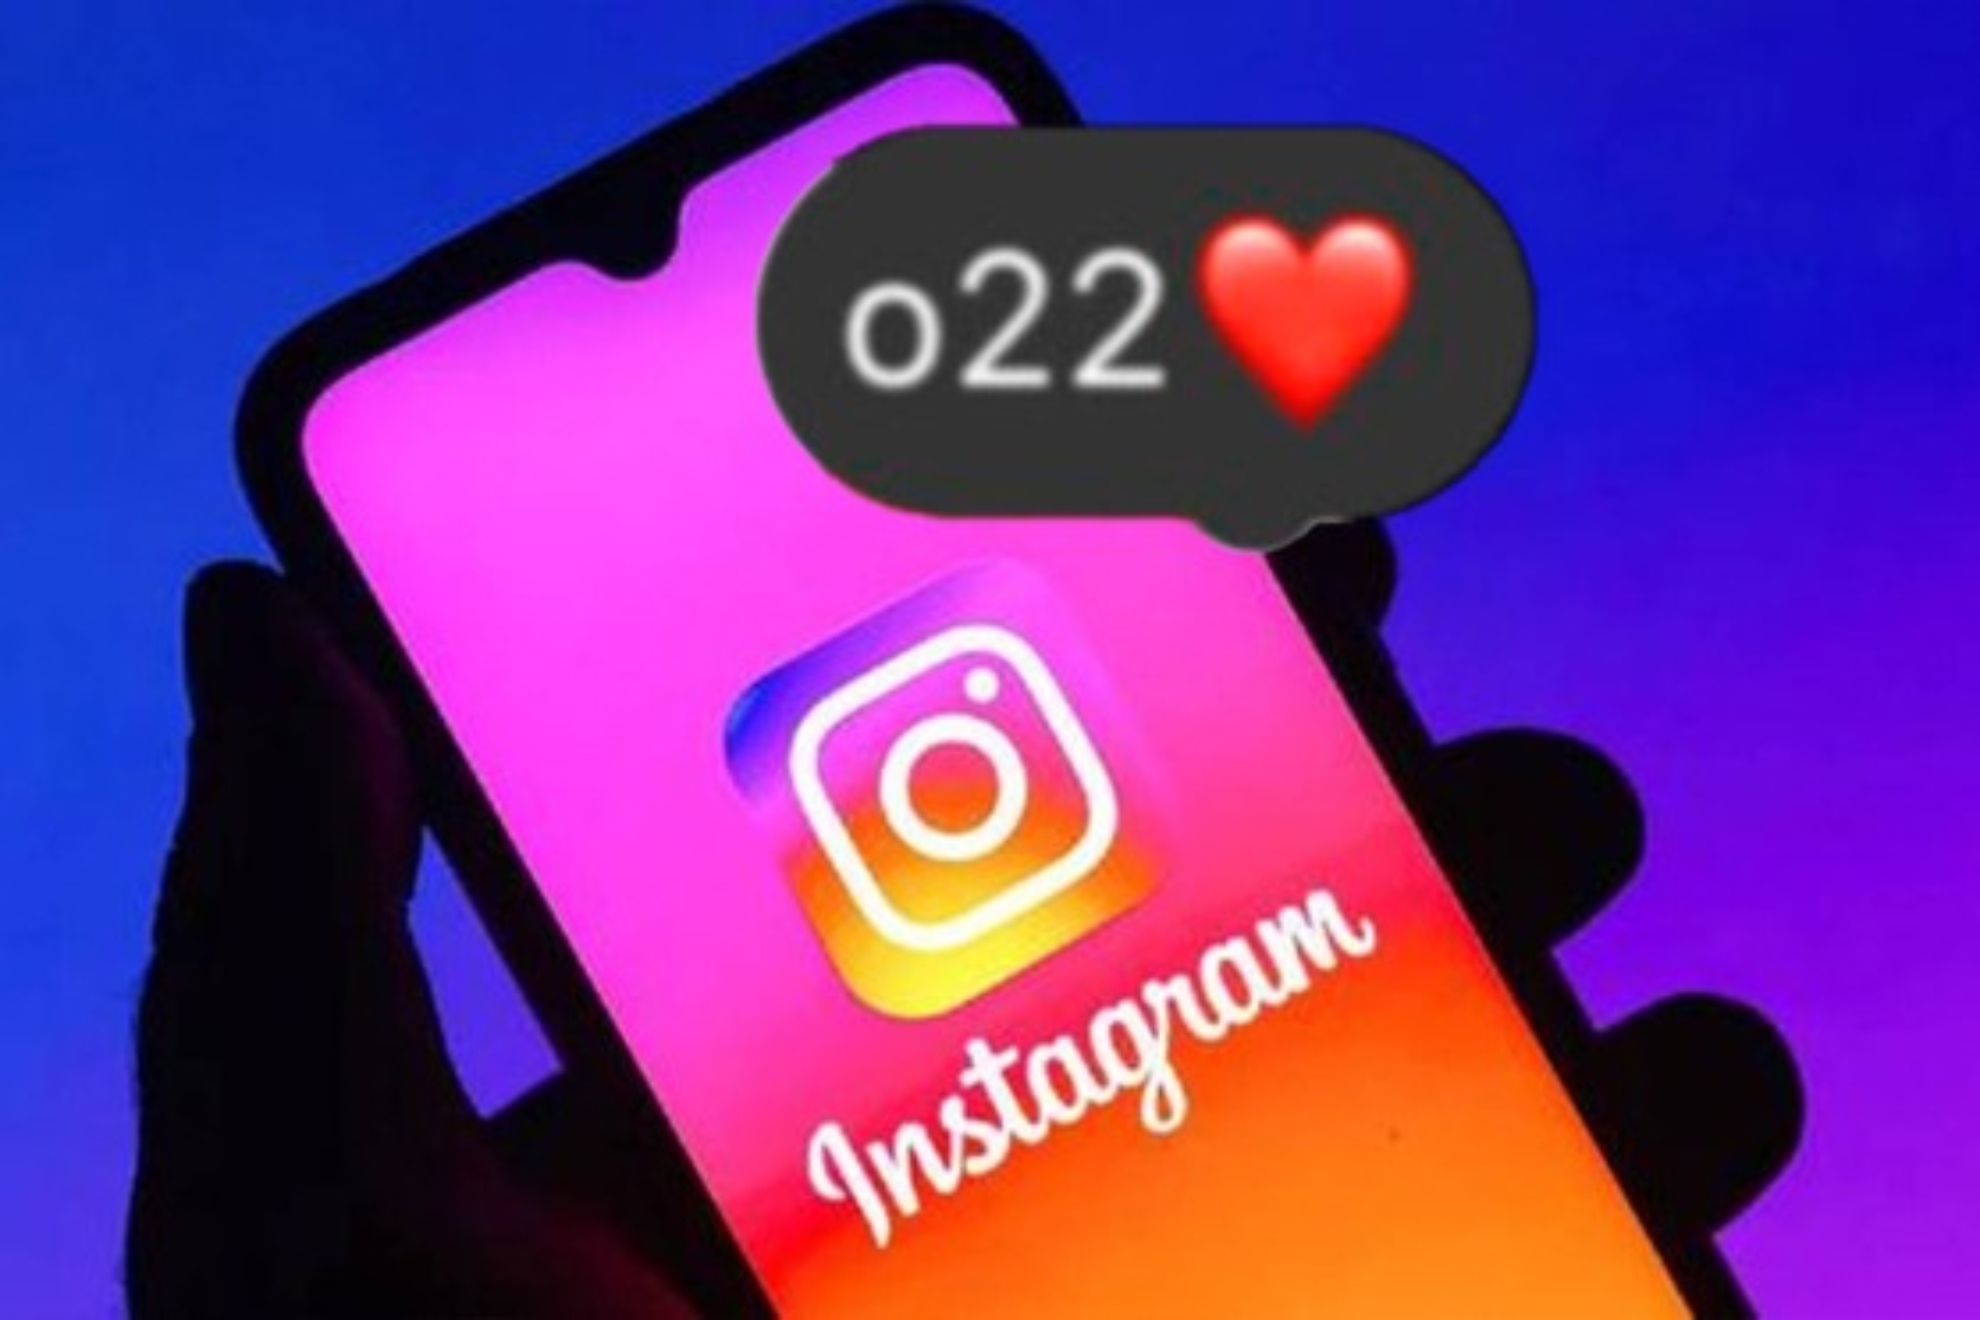 ¿Qué significa o22 en Instagram? Significado de todos los códigos en tendencia